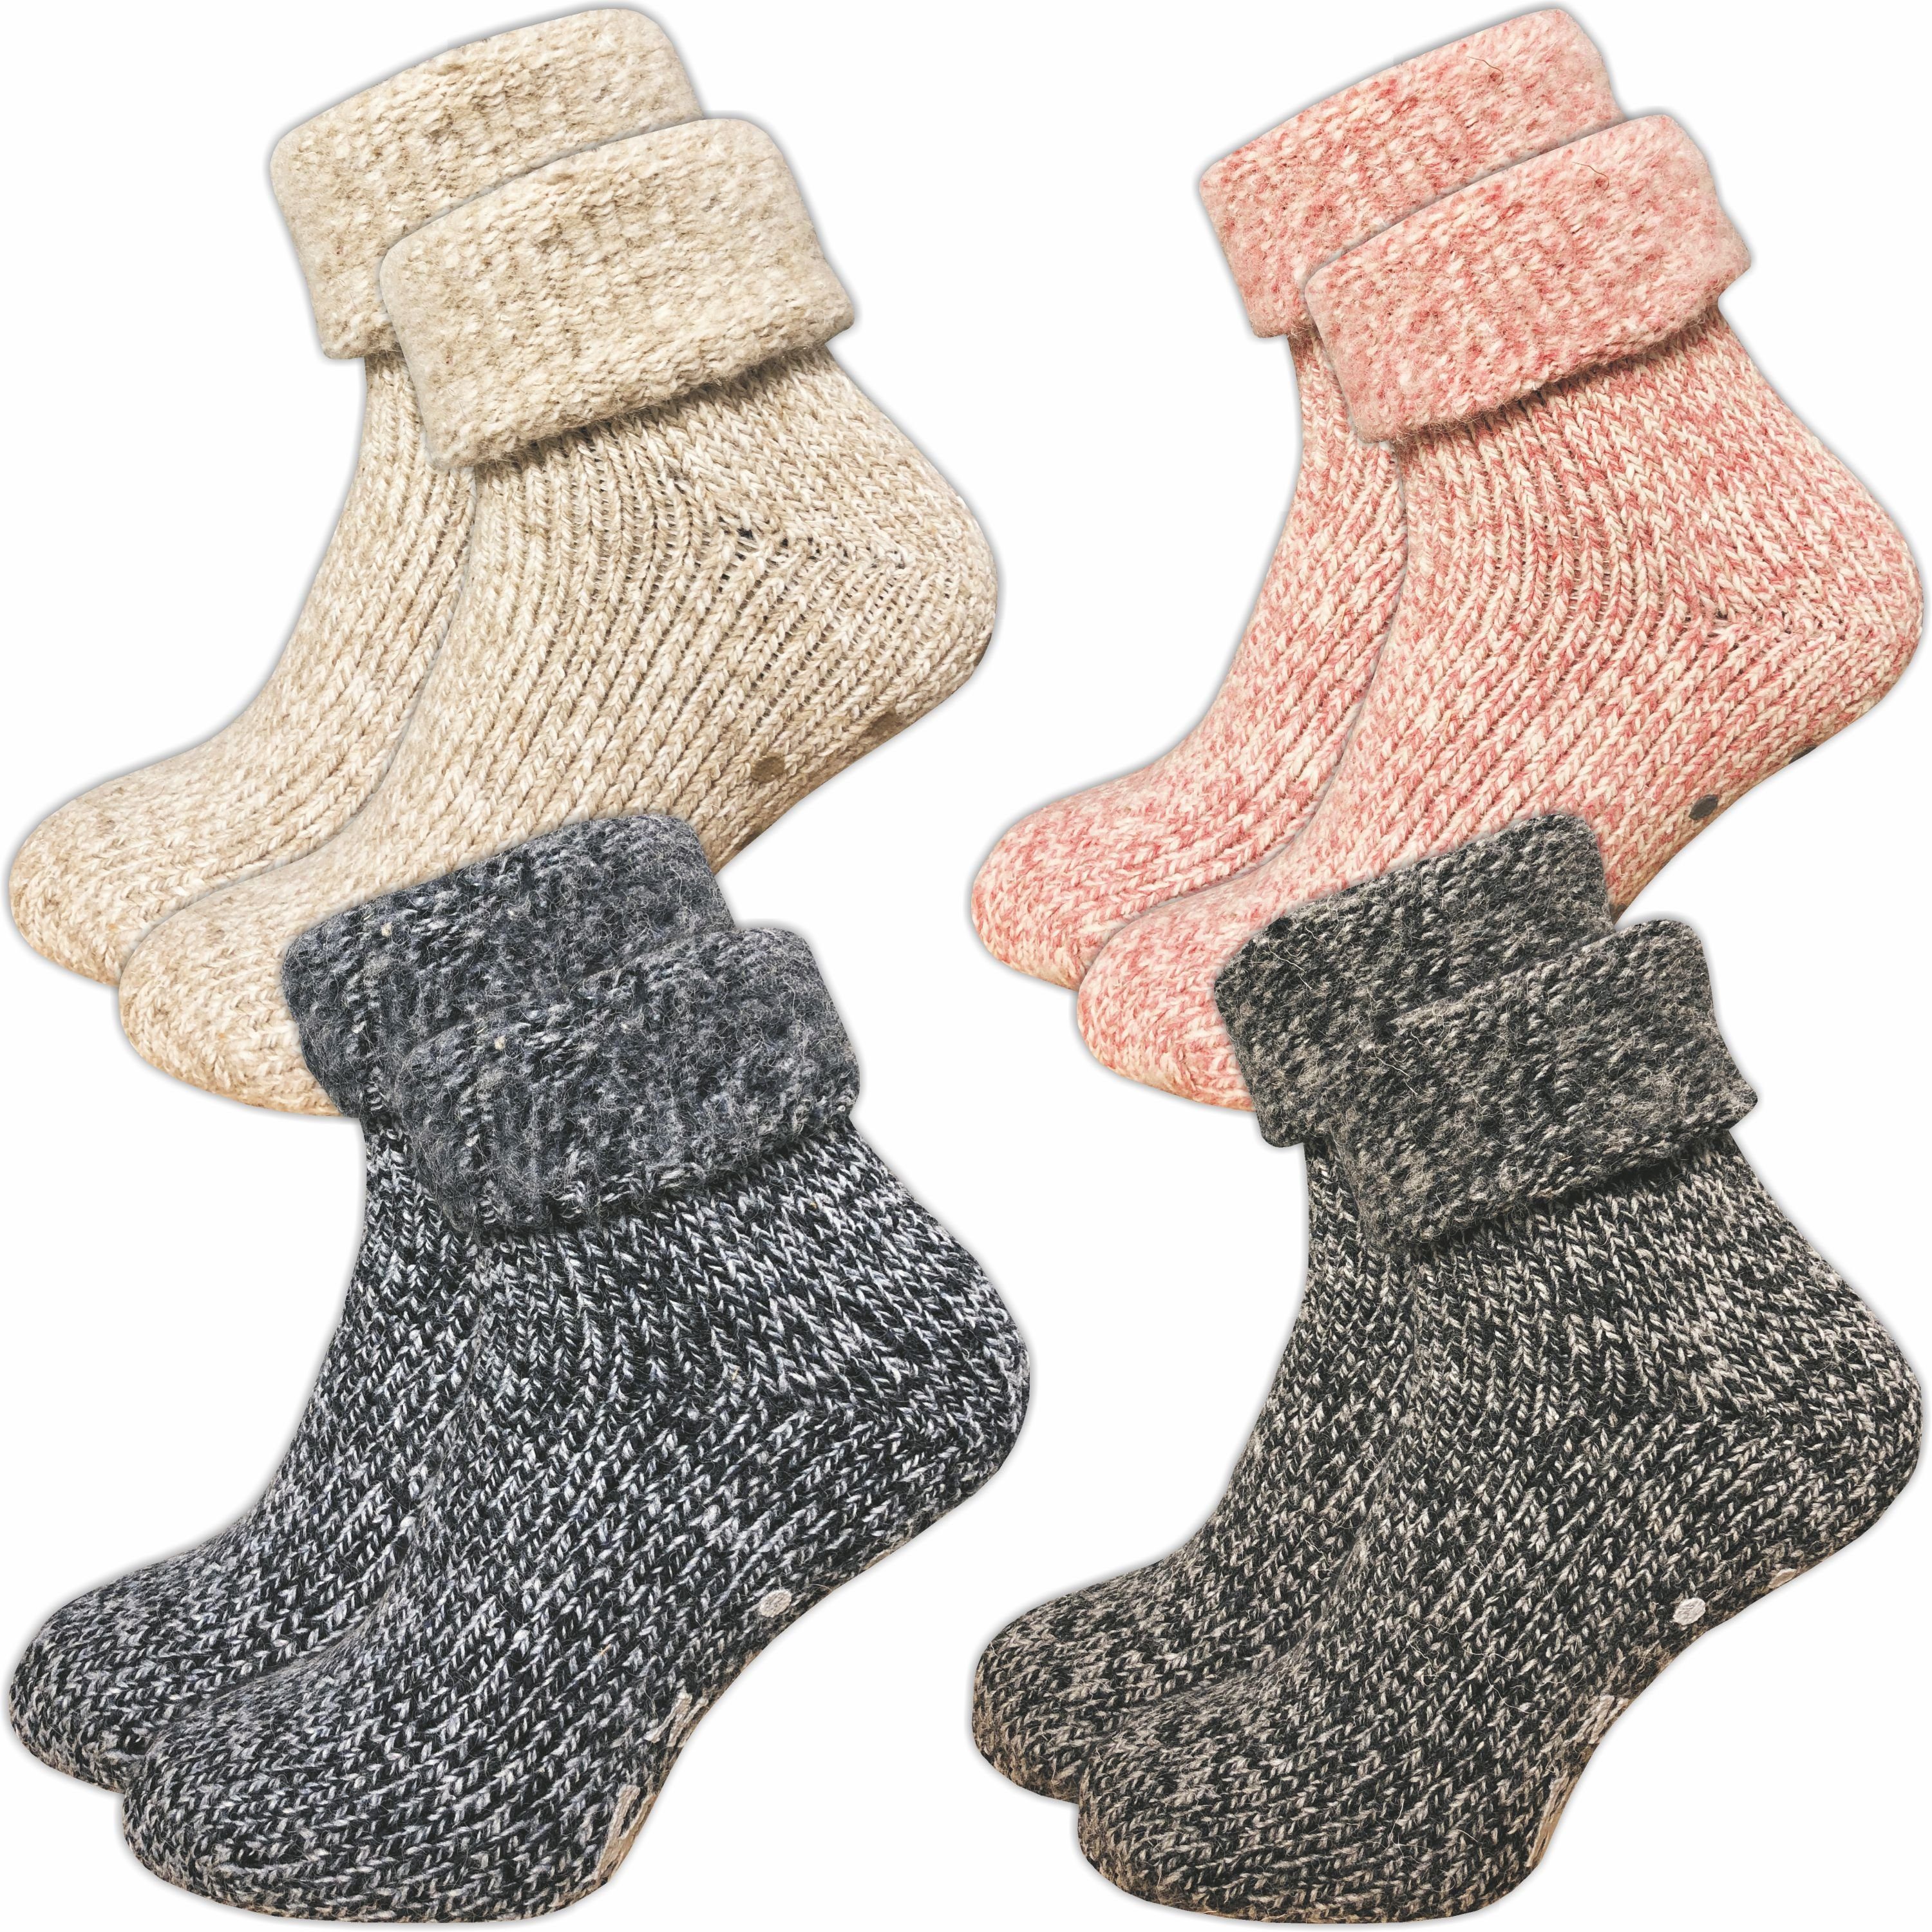 GAWILO ABS-Socken für Damen - Rutschfeste Hausschuhsocken - extra weich & mit Noppen (1 Paar) kuschelige & warme Wolle hilft gegen kalte Füße mix 4er